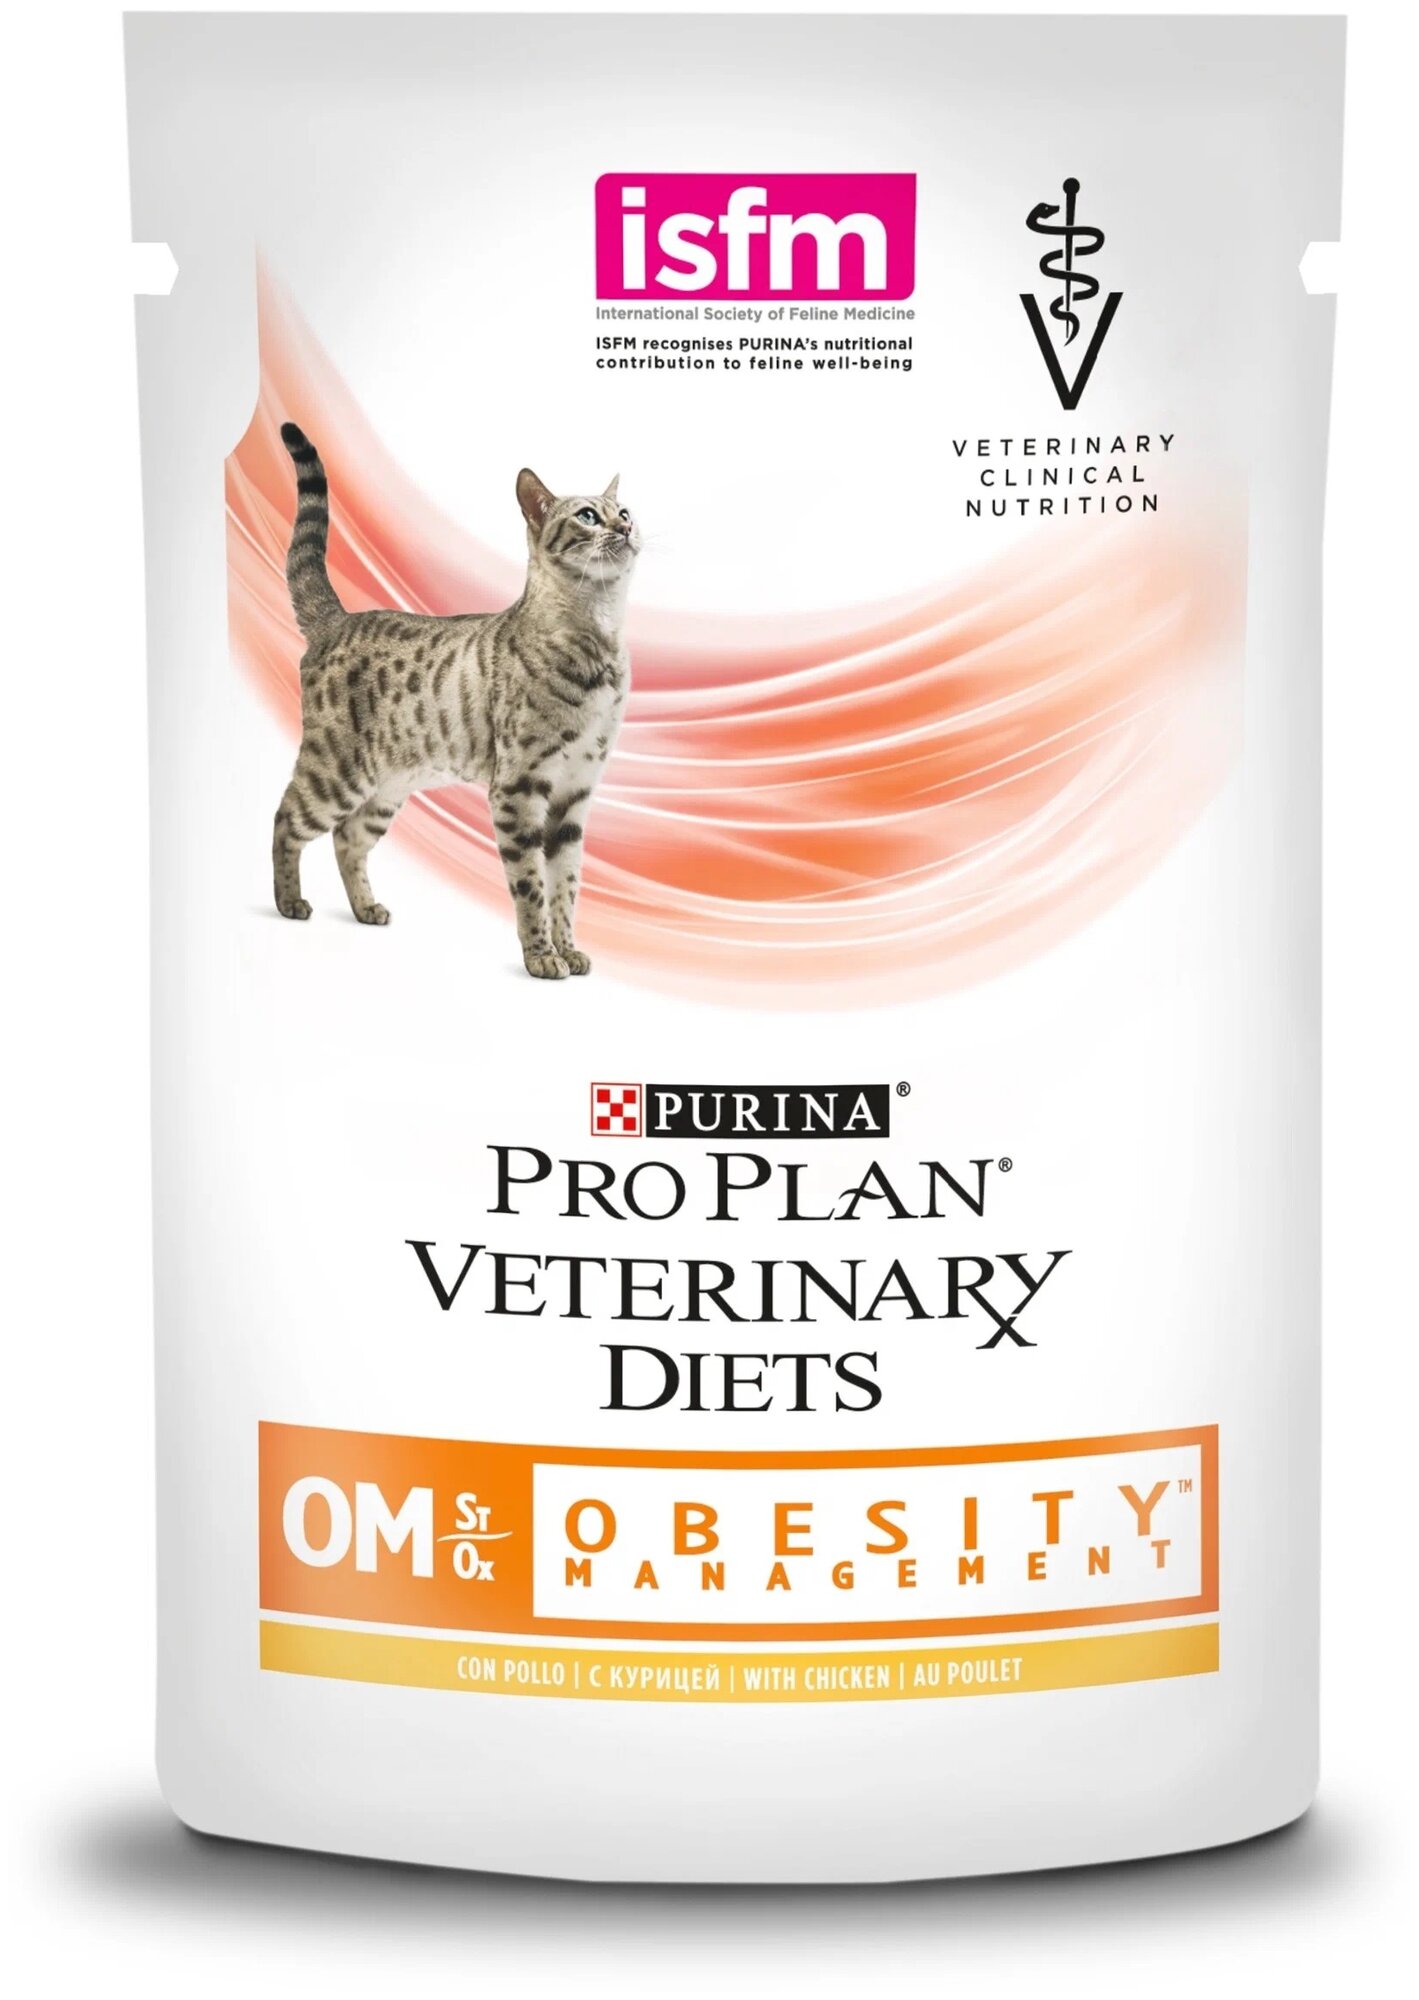 Влажный корм для кошек Purina Pro Plan Veterinary Diets OM St/Ox OBESITY MANAGEMENT, для снижения избыточной массы тела, с курицей, 2 шт. х 85 г